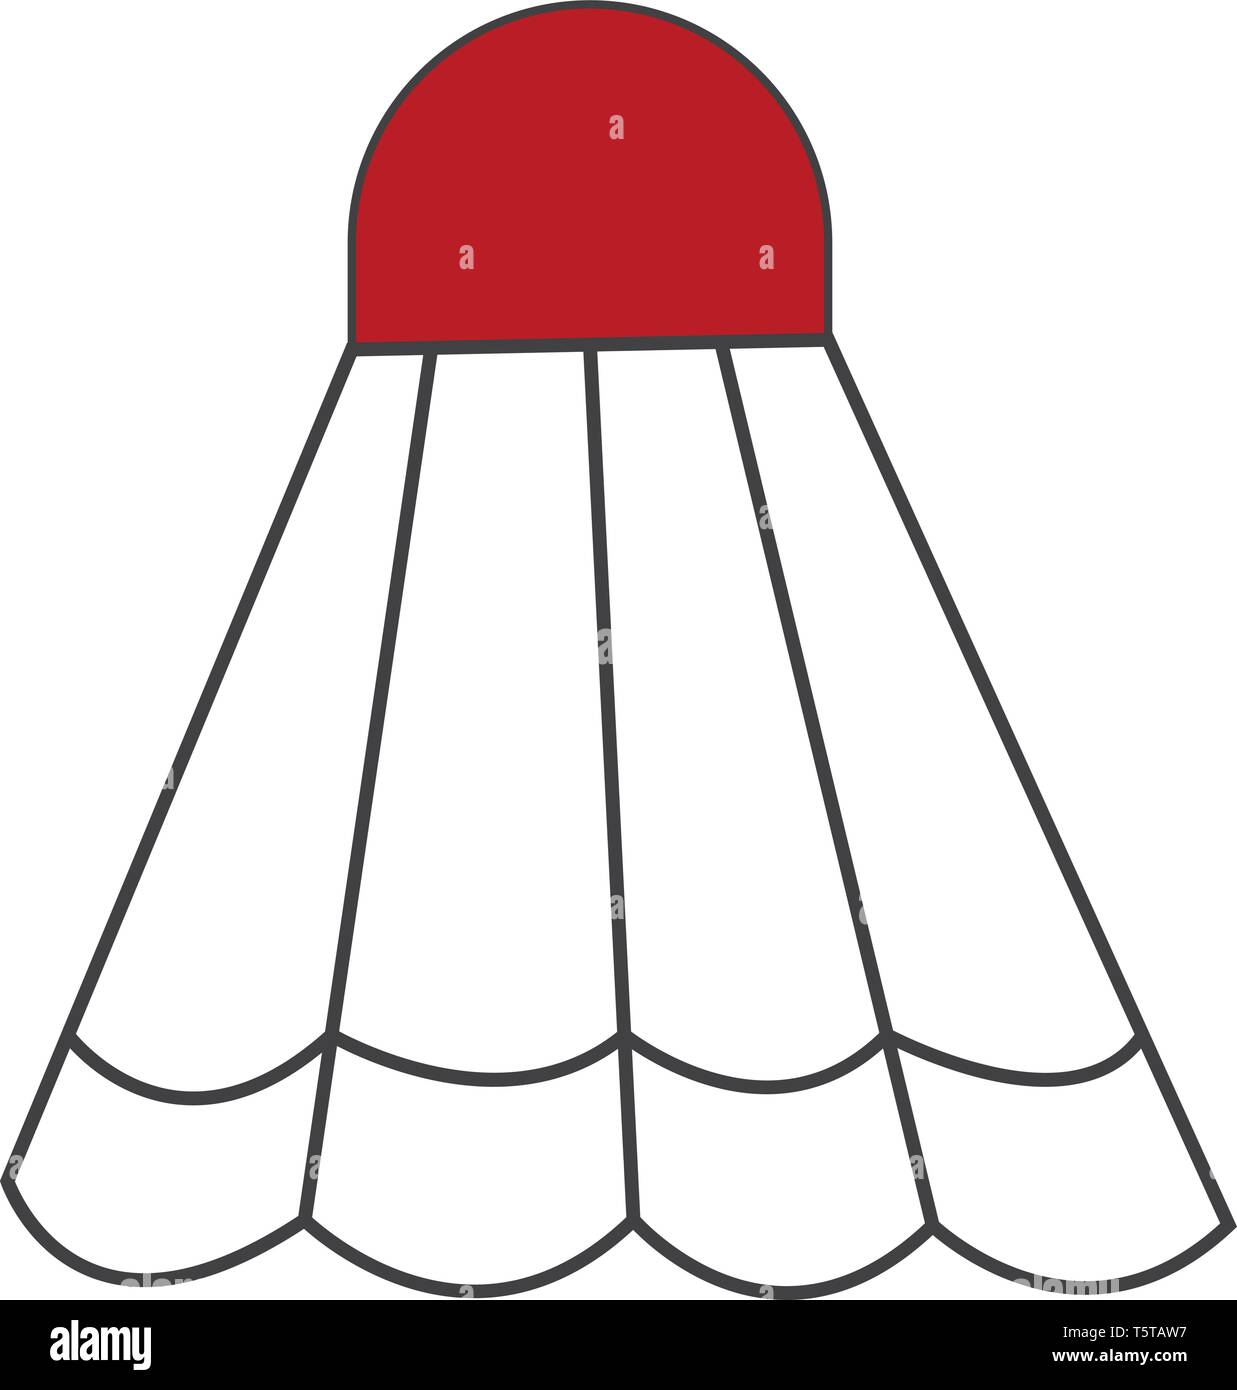 Einen Korken auf die weißen Federn befestigt sind eine konische Form zu bilden mit einer roten Kappe in der Regel mit Schläger in die Spiele von Badminton und Batt Struck Stock Vektor